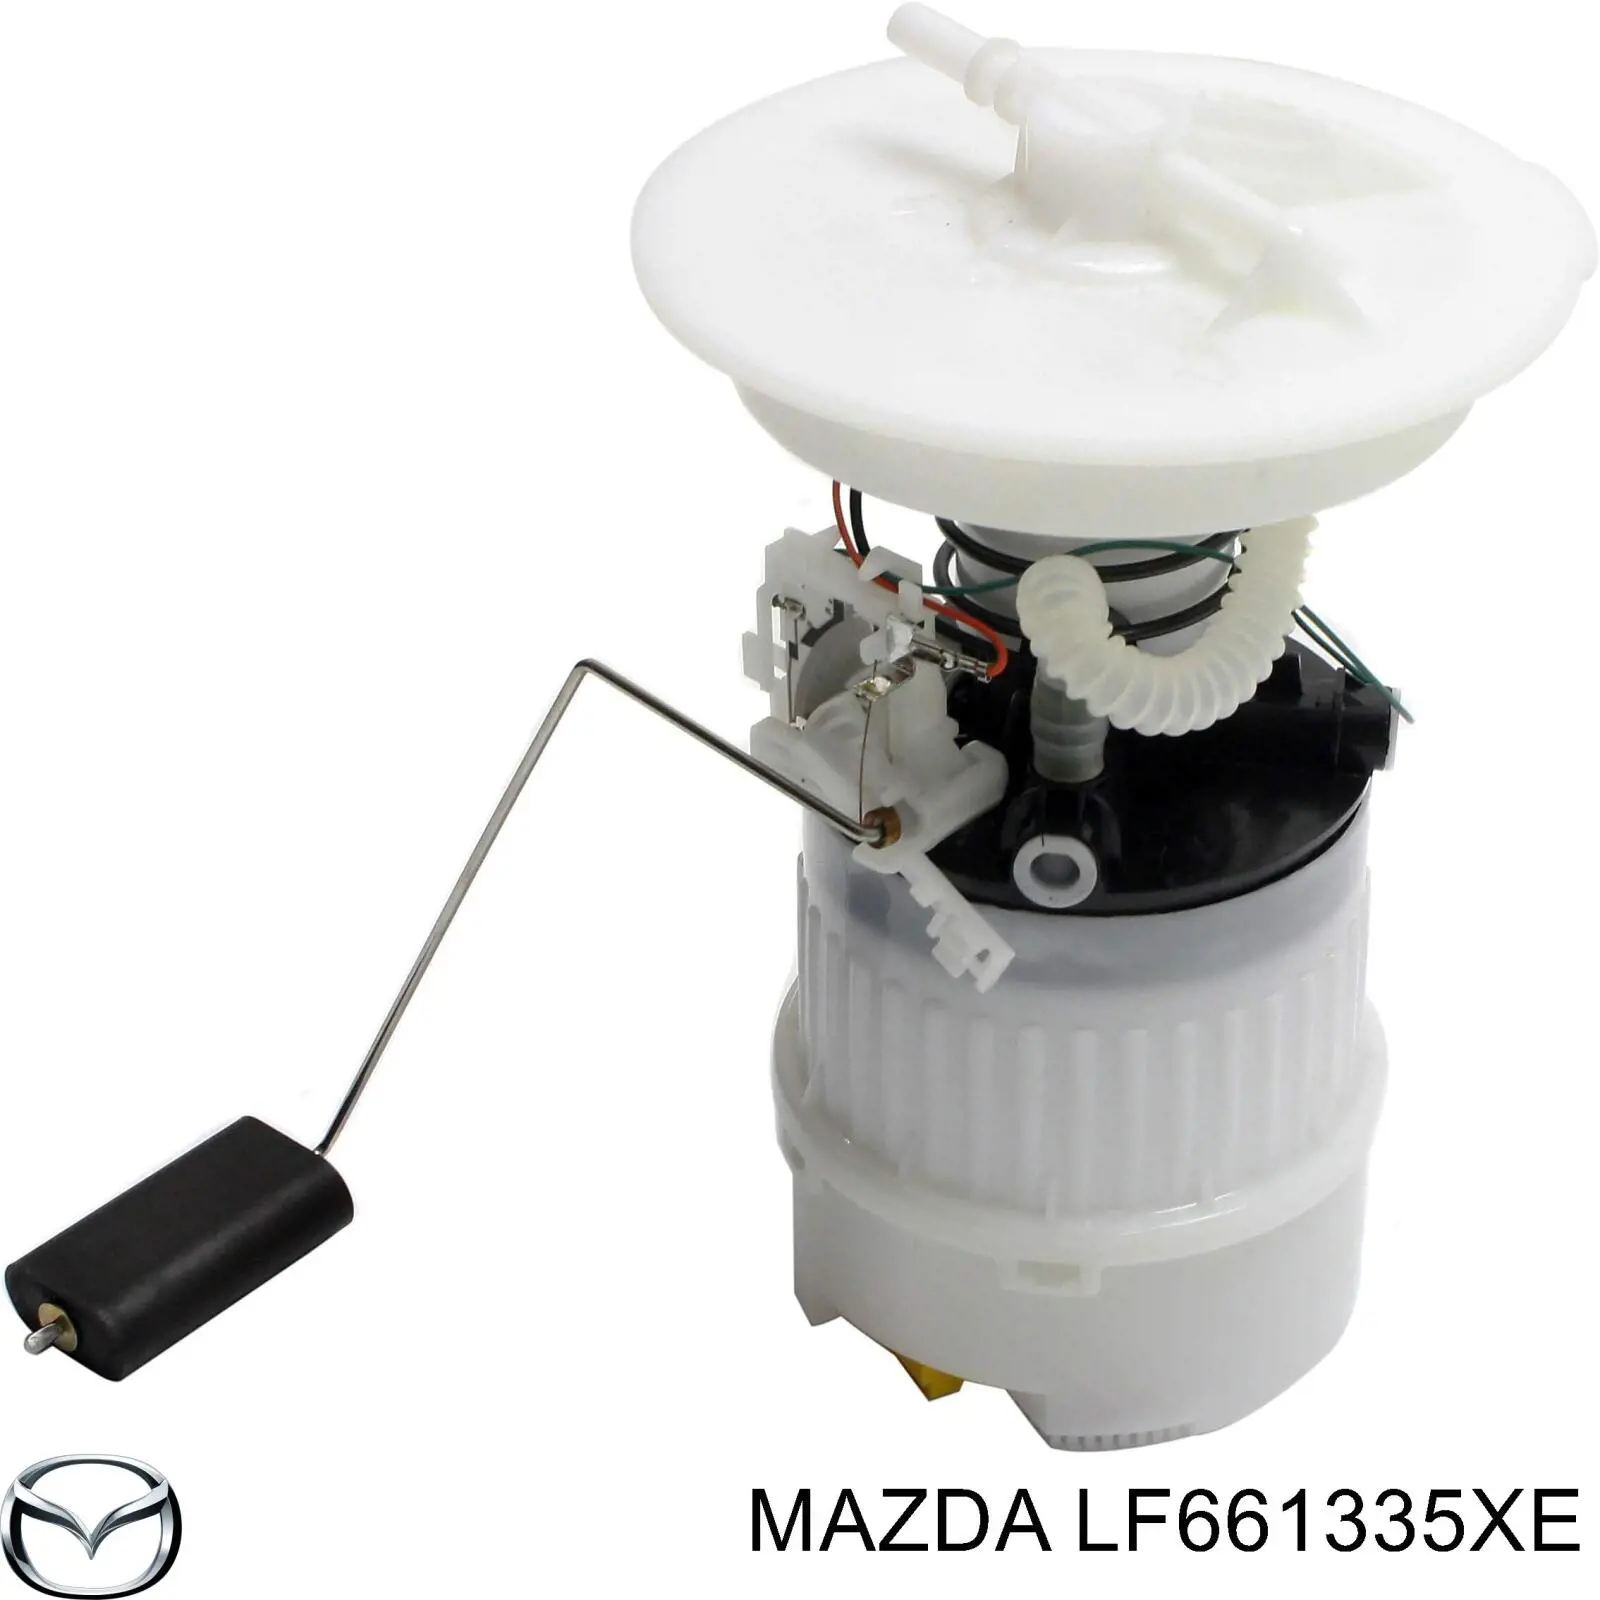 LF661335XF Mazda топливный насос электрический погружной